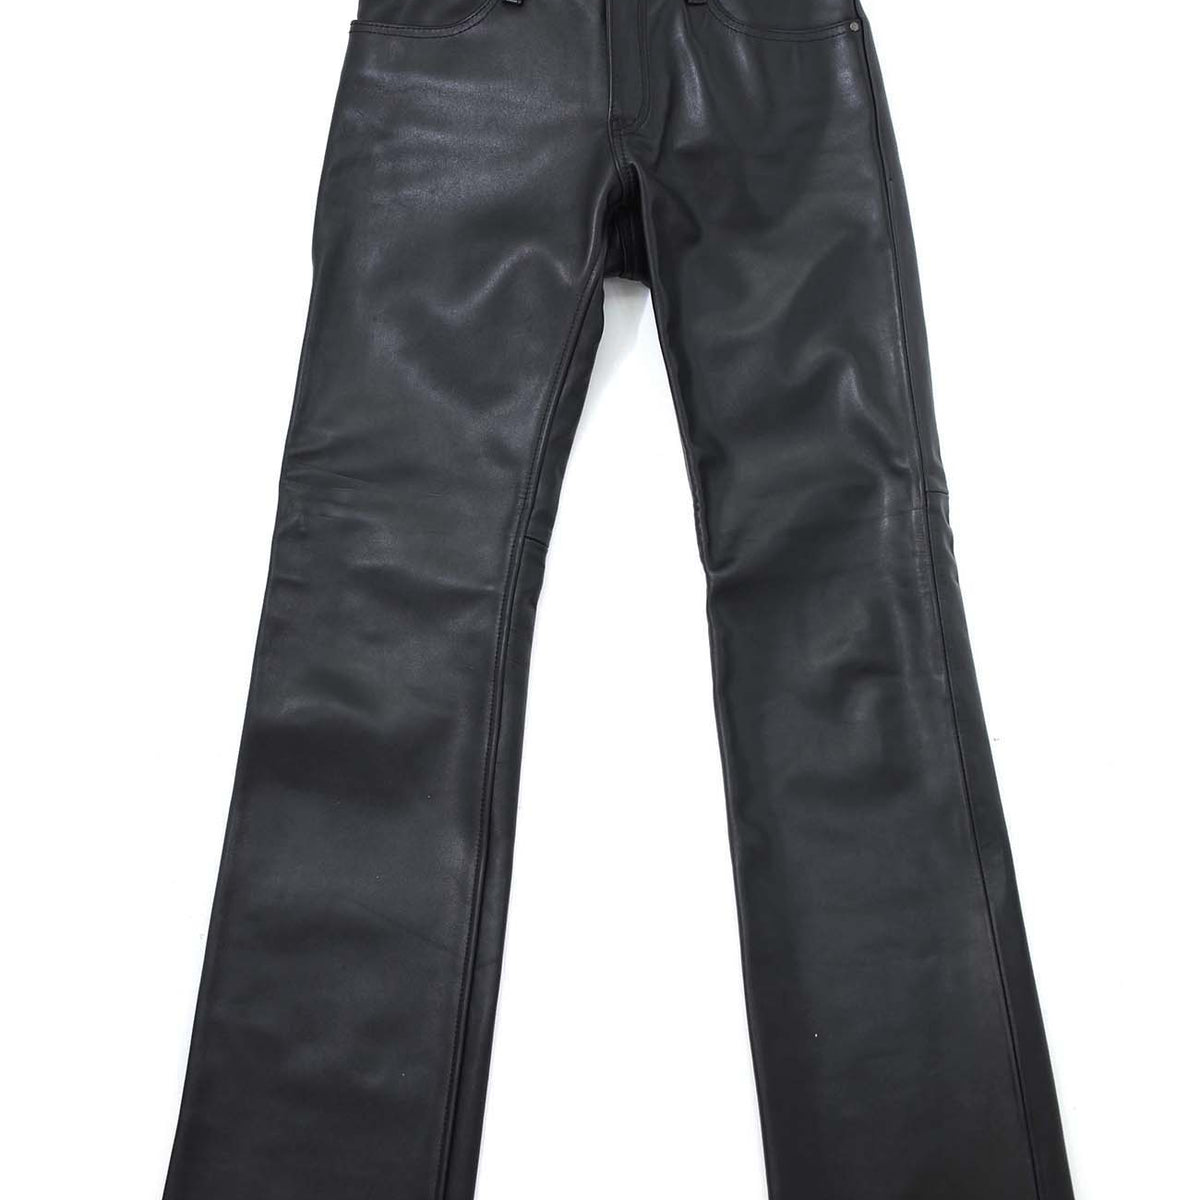 KADOYA Leather Pants Black Size 35 